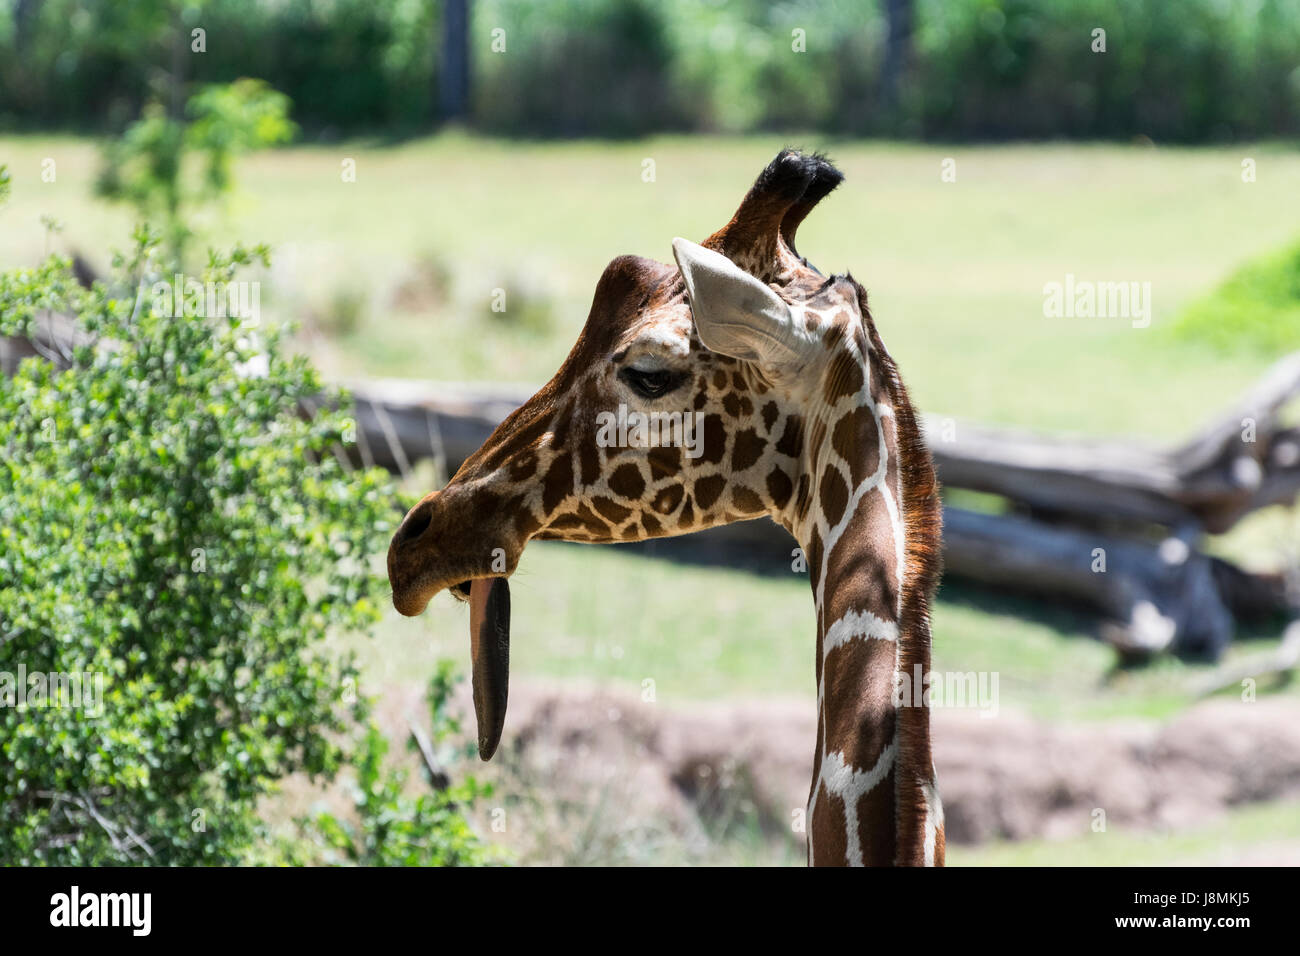 Primo piano di un aspetto buffo Giraffe reticolate come sembra fuori il lato con la sua linguetta appendere fuori della sua bocca rendendo il look davvero sciocco. Foto Stock